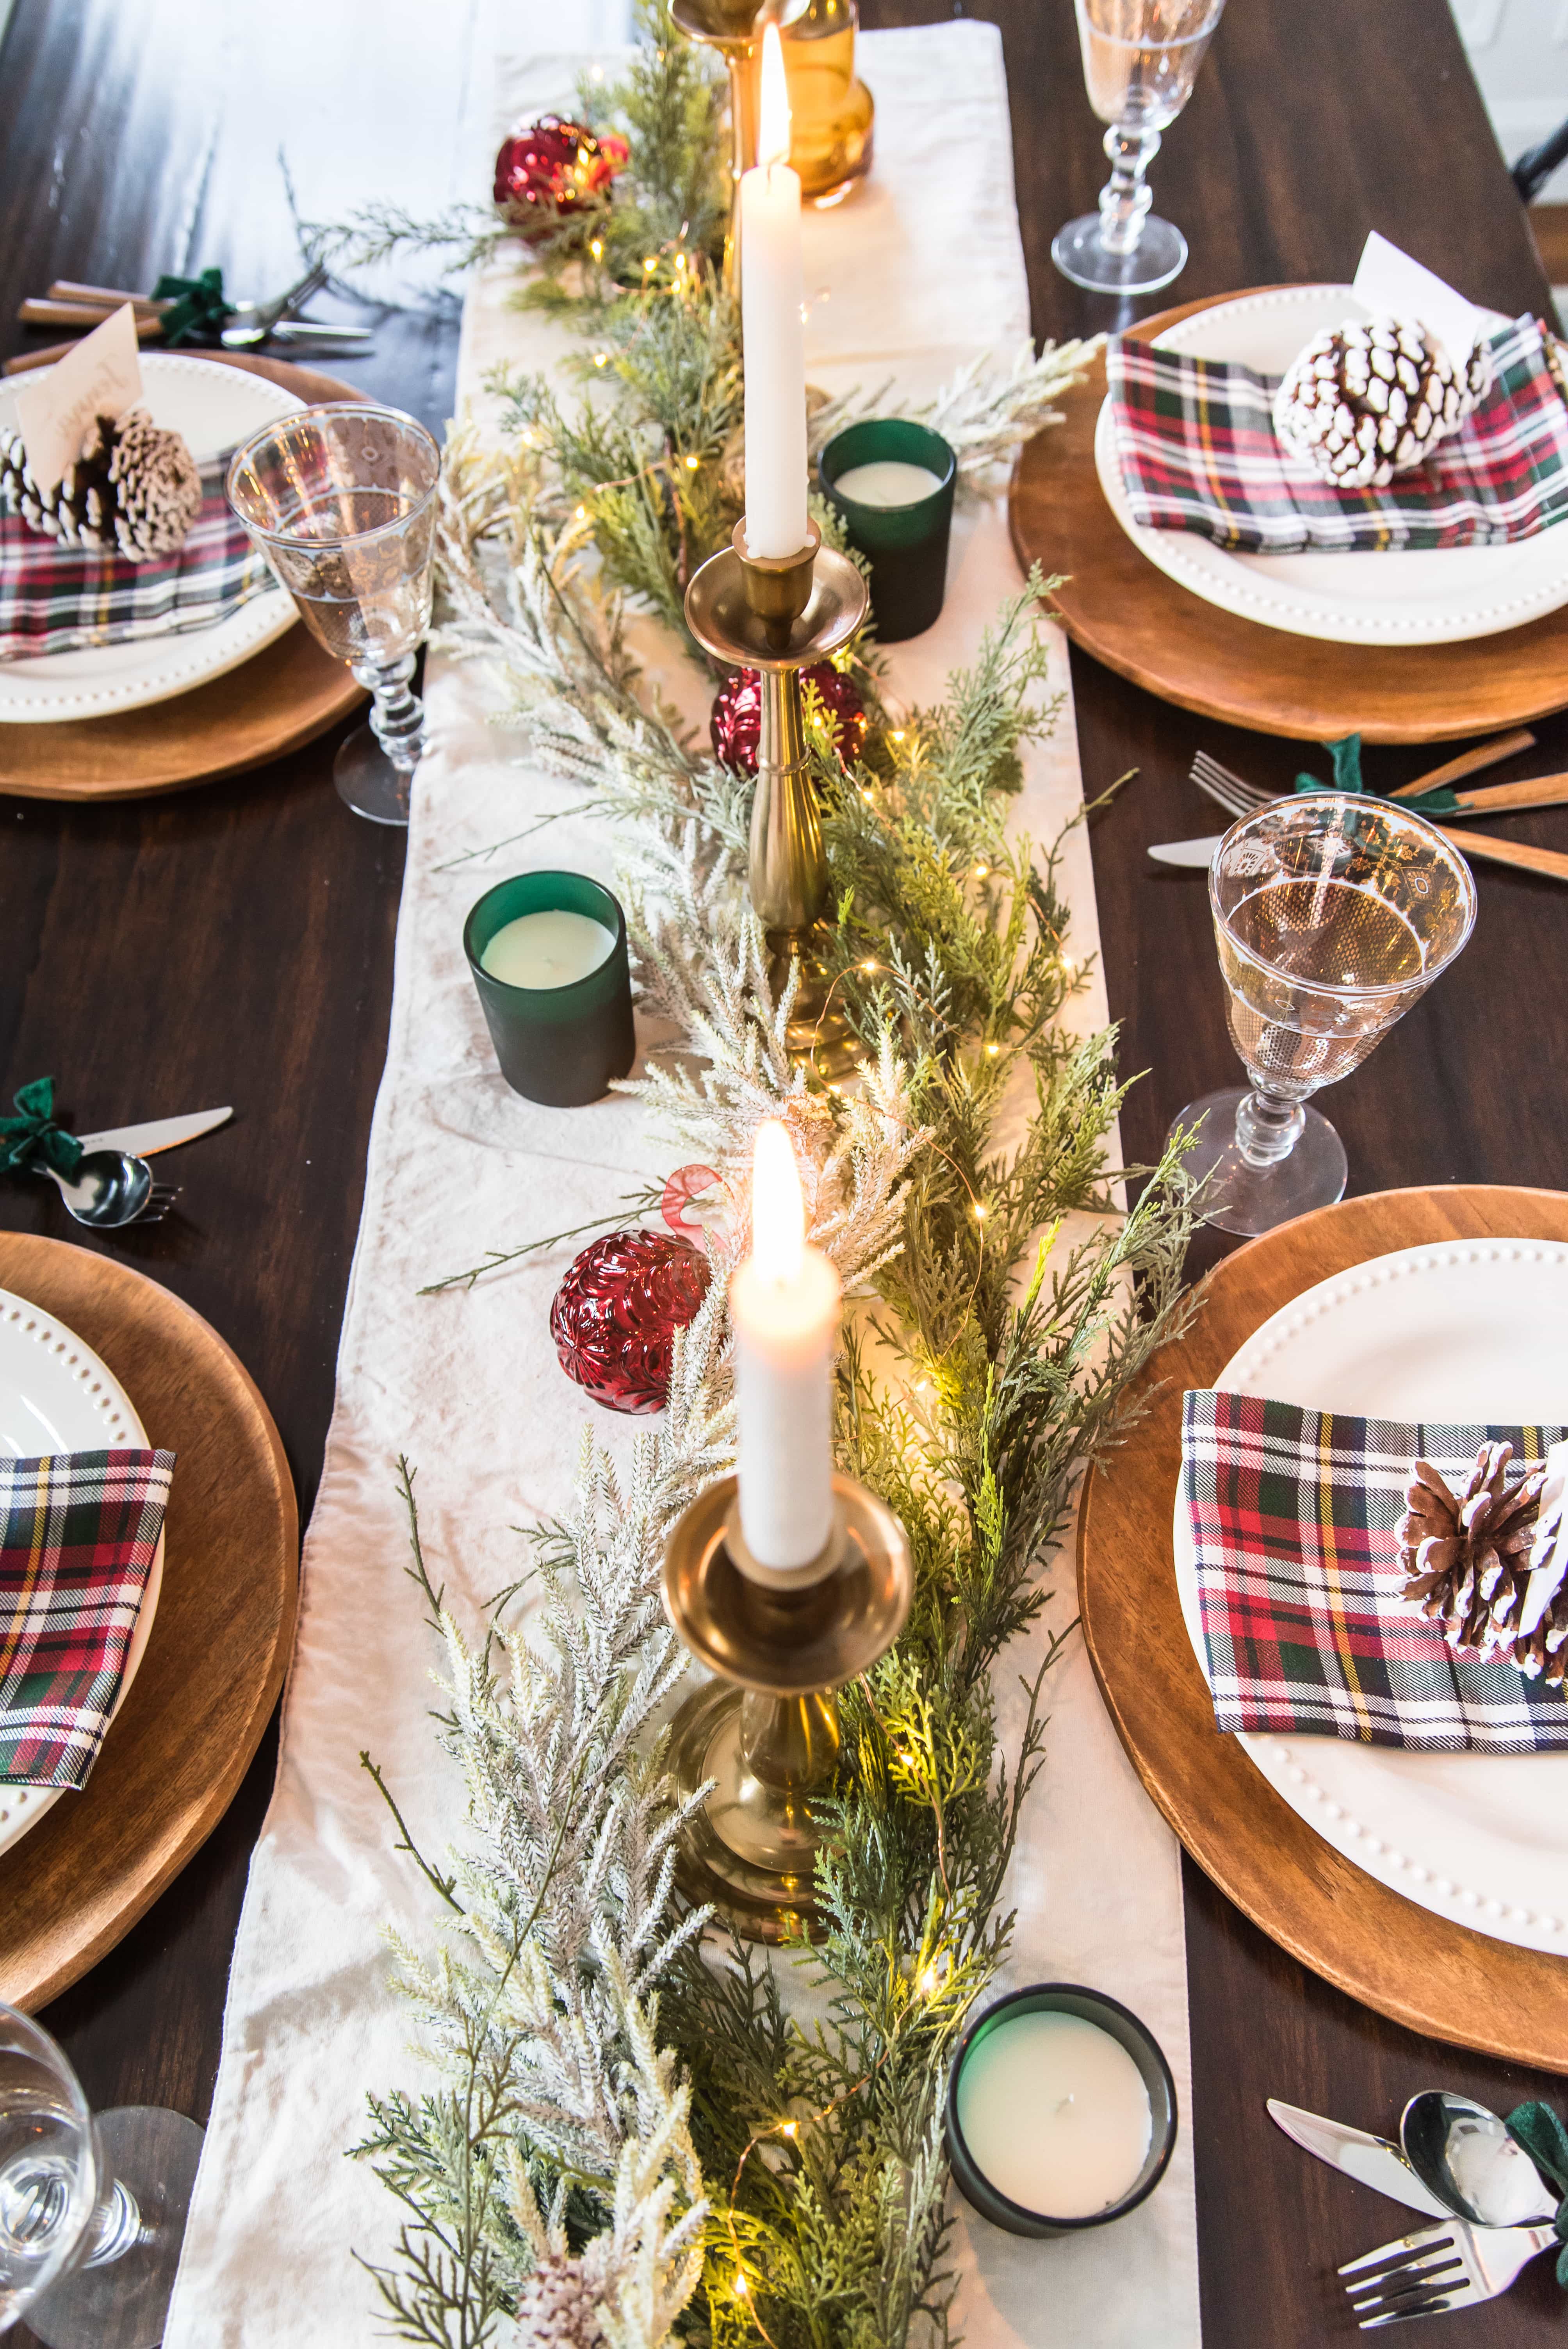 Traditional Christmas table decor for 2018